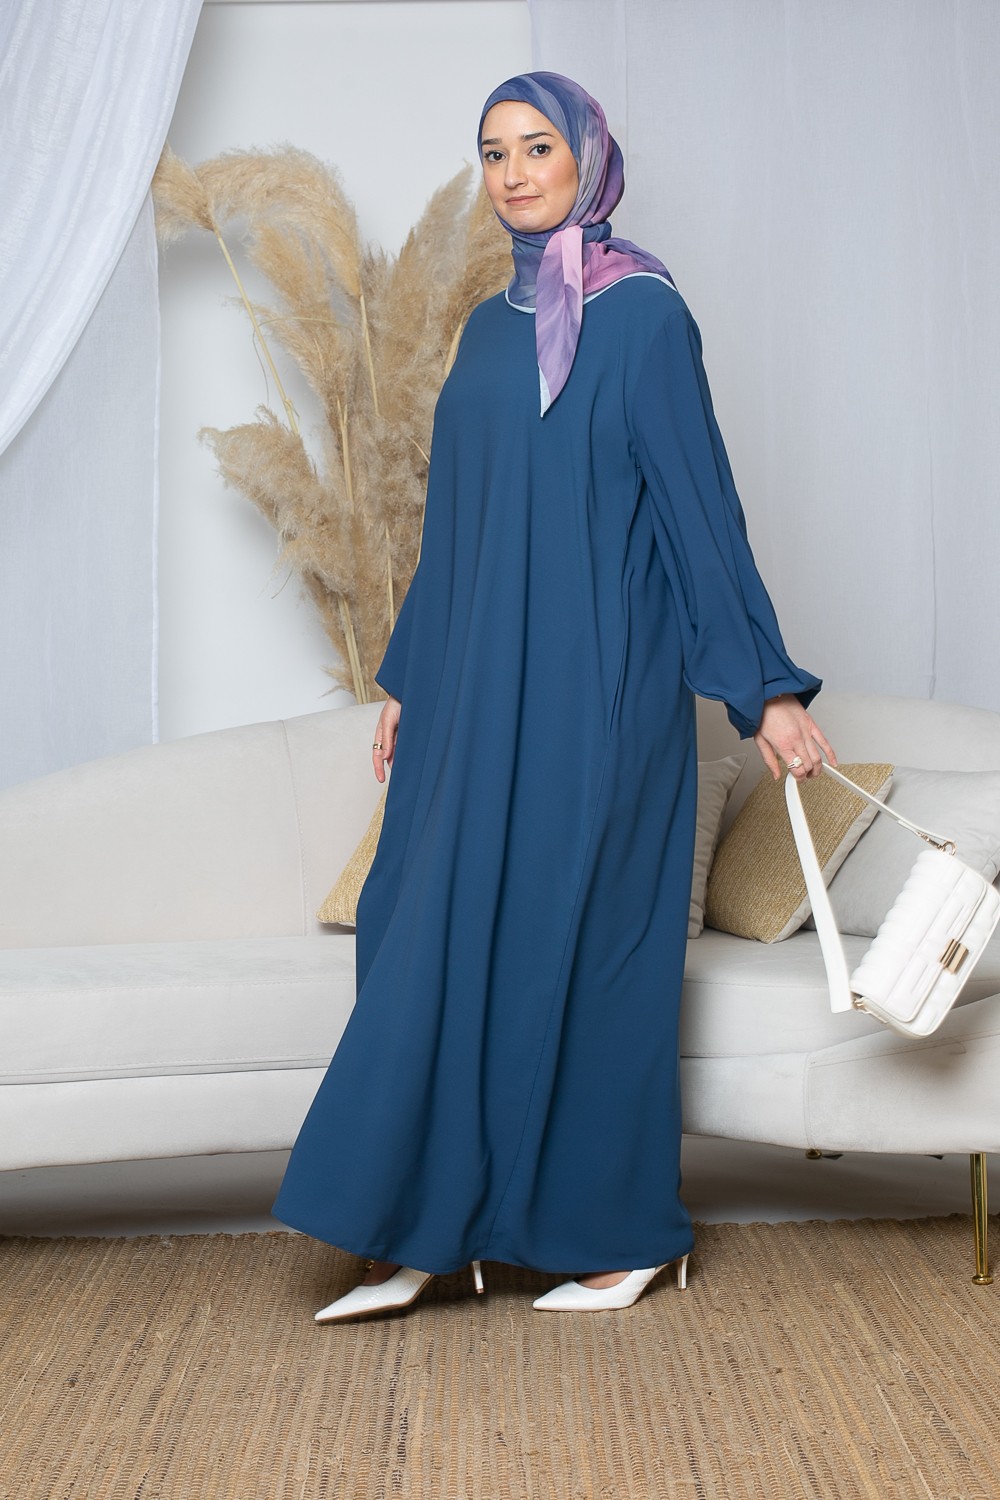 Robe longue et large manche bouffante en soie de Médine pour femme musulmane.